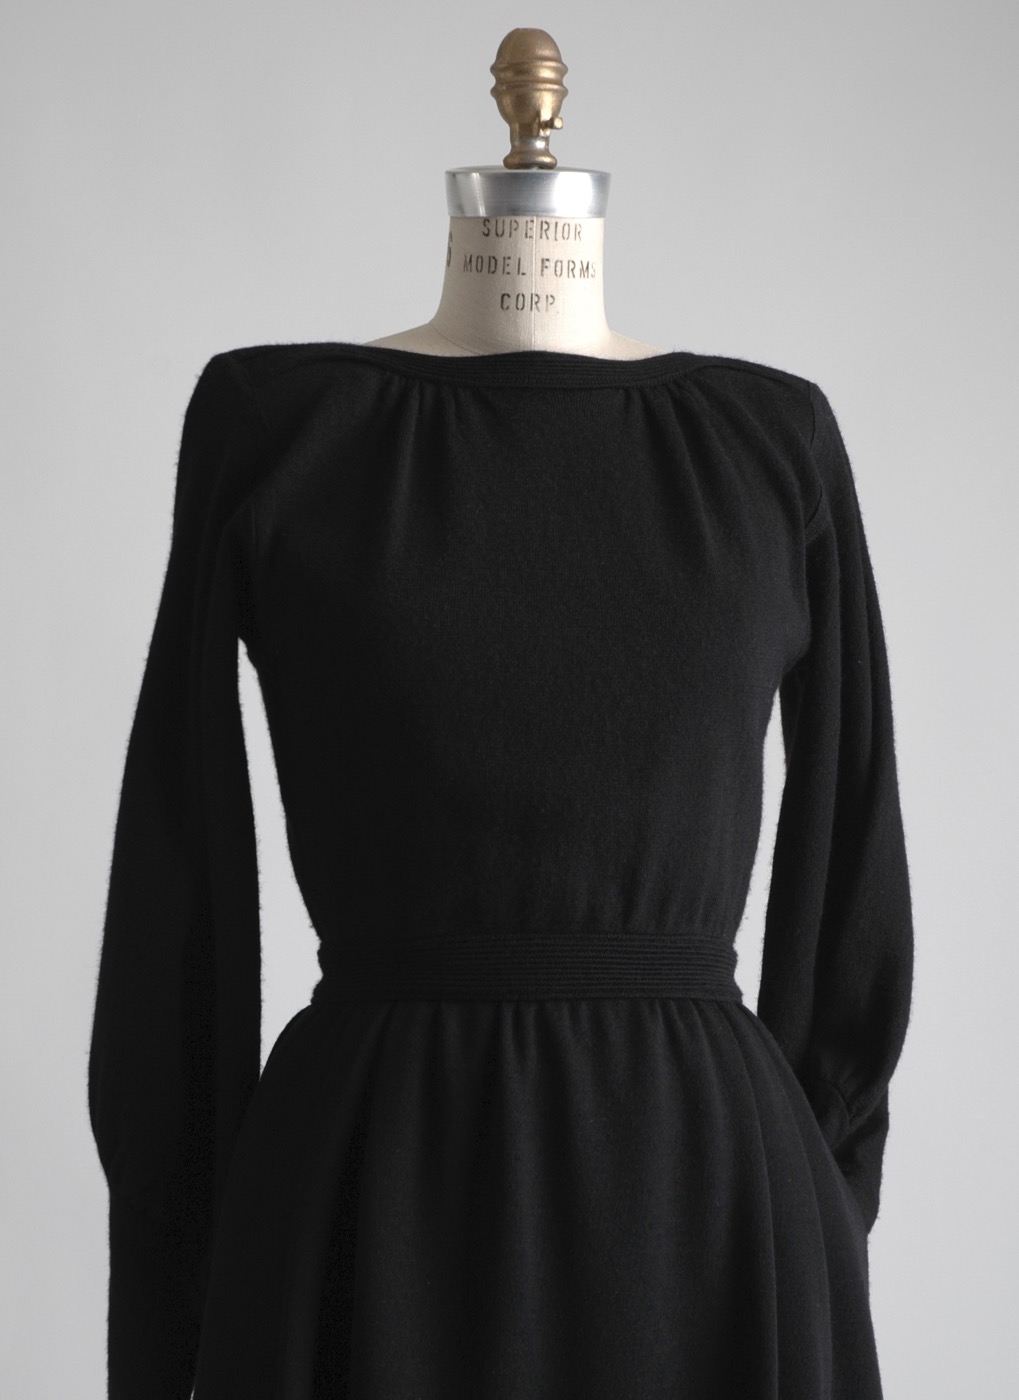 1980s Talbots black wool dress